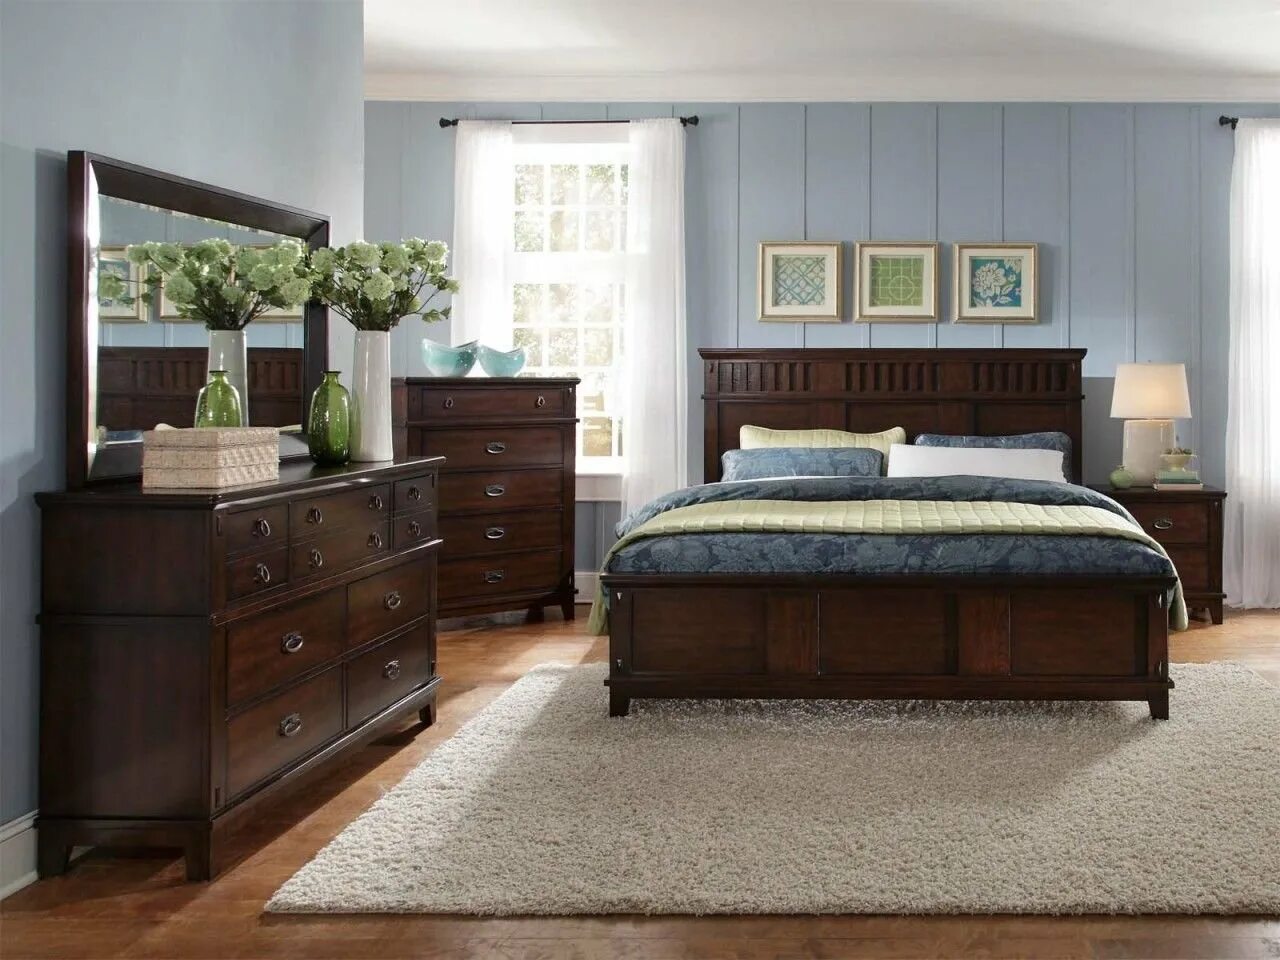 Комната коричневая мебель. Спальня с темной мебелью. Коричневая мебель в интерьере. Спальня с коричневой кроватью. Коричневая кровать в интерьере.